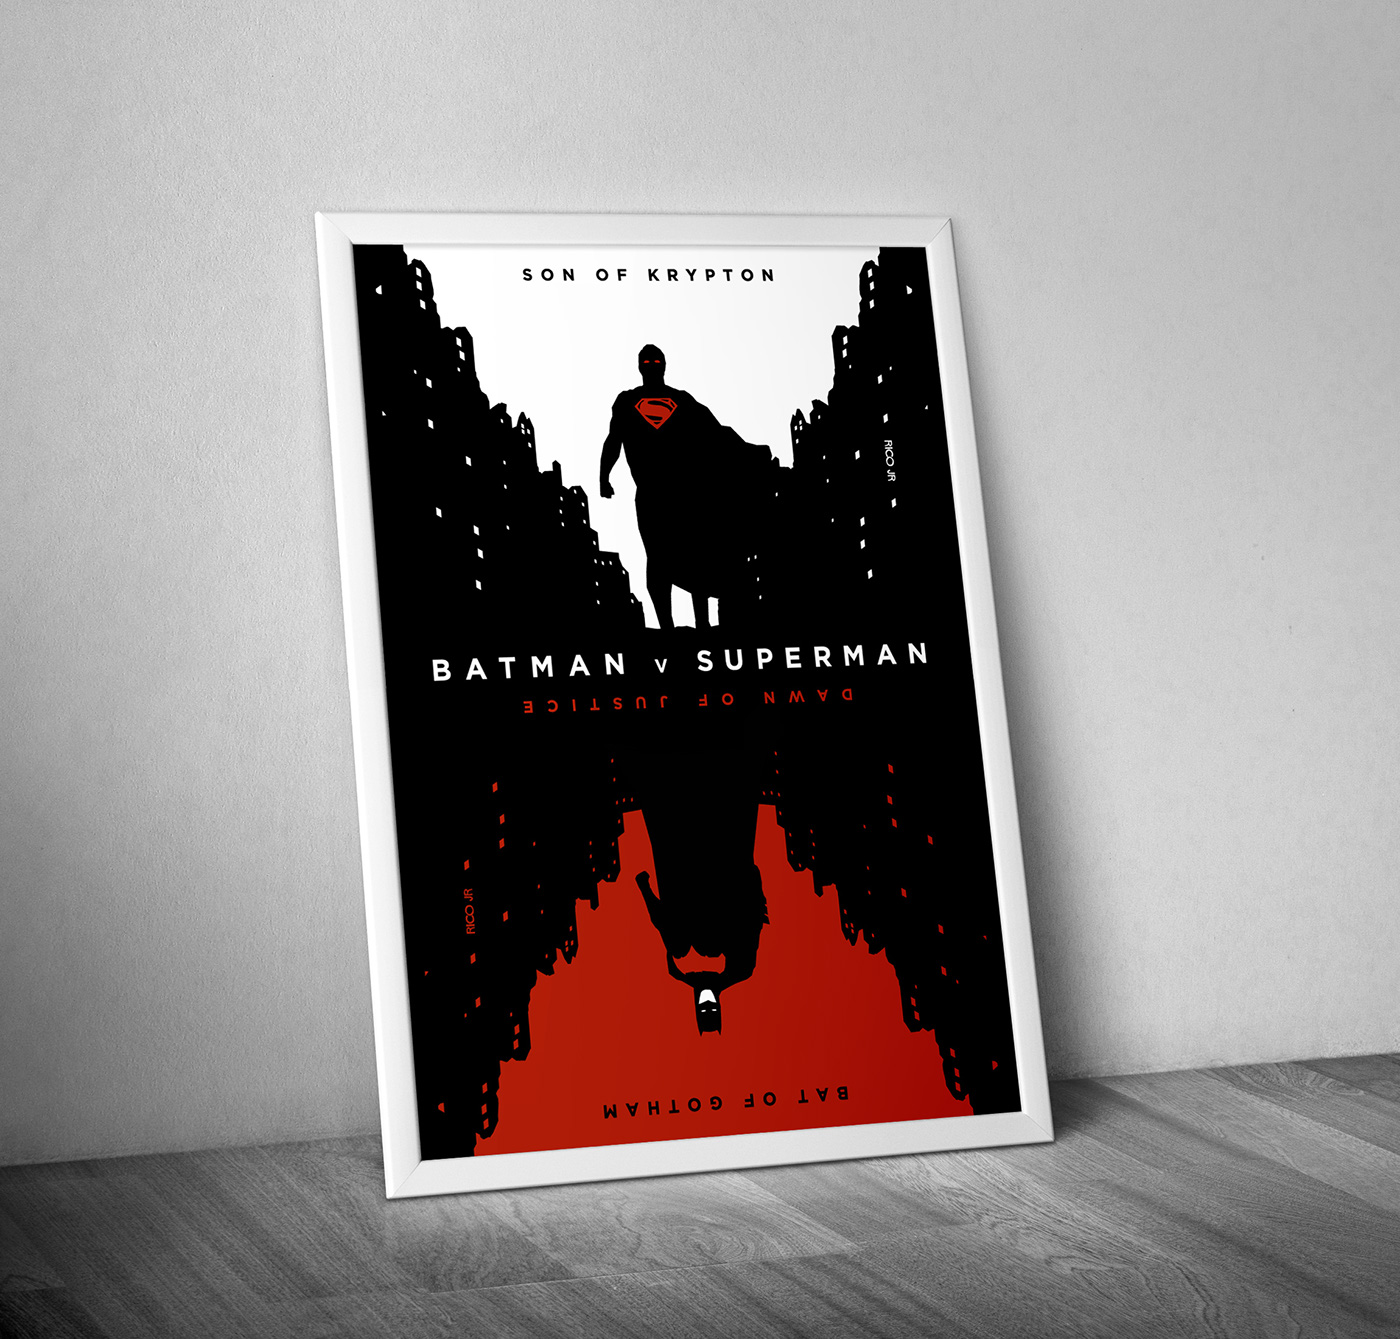 batman v superman versus batman Ben Affleck THE DARK KNIGHT gotham superman henry cavill Man of Steel Krypton Dc Comics warner bros poster movie Fan Art